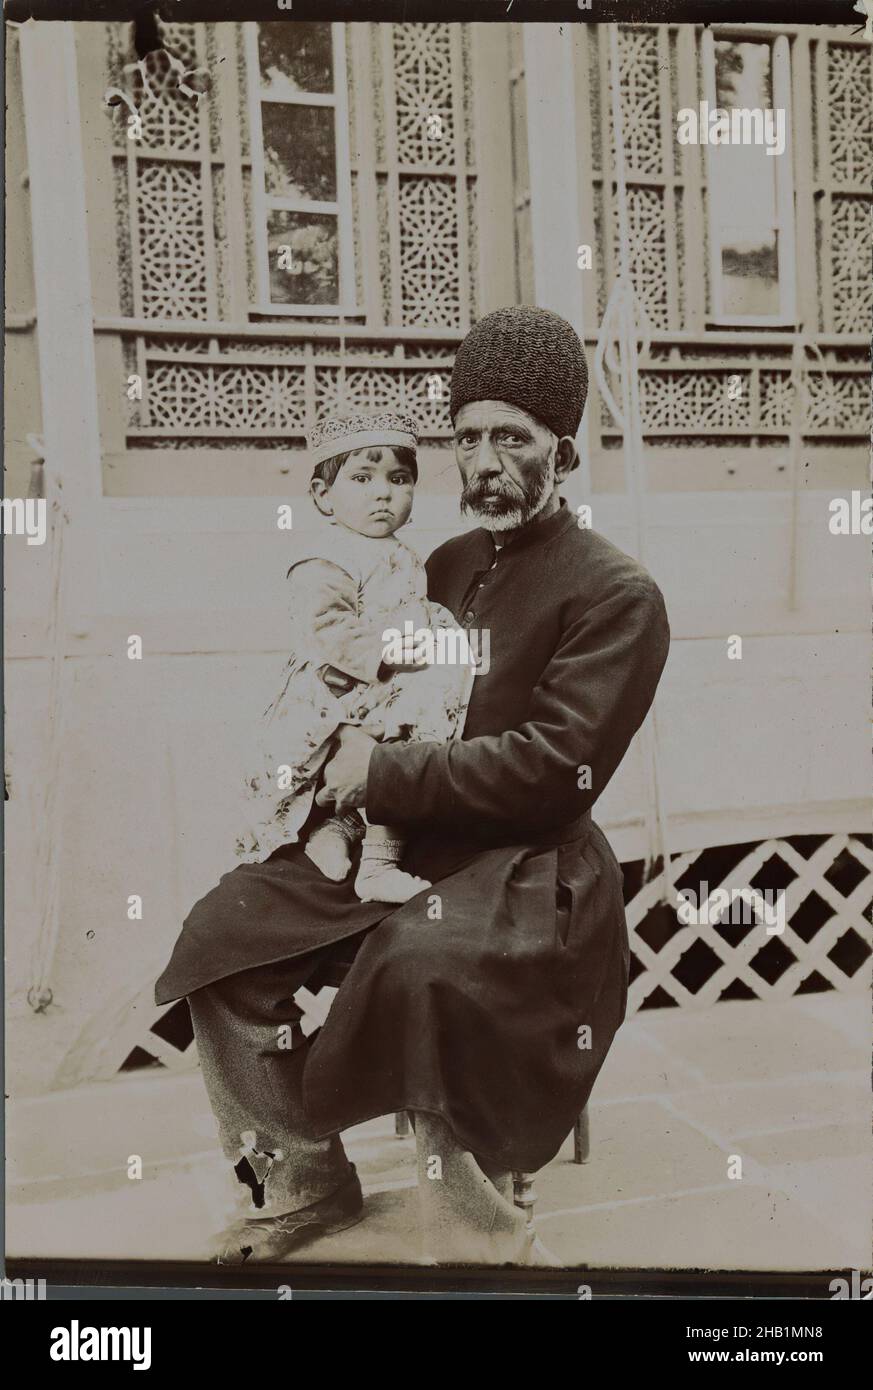 Dowlet Morad Bek & Child, Torkmen, eine von 274 Vintage-Fotografien, Gelatin-Silberdruckpapier, Ende 19th-Anfang 20th. Jahrhundert, Qajar, Qajar-Zeit, 7 1/8 x 4 13/16 Zoll, 18,1 x 12,2 cm, historisch, iran, iranisch, islamisch, persien, persisch, qajar, sitzend Stockfoto